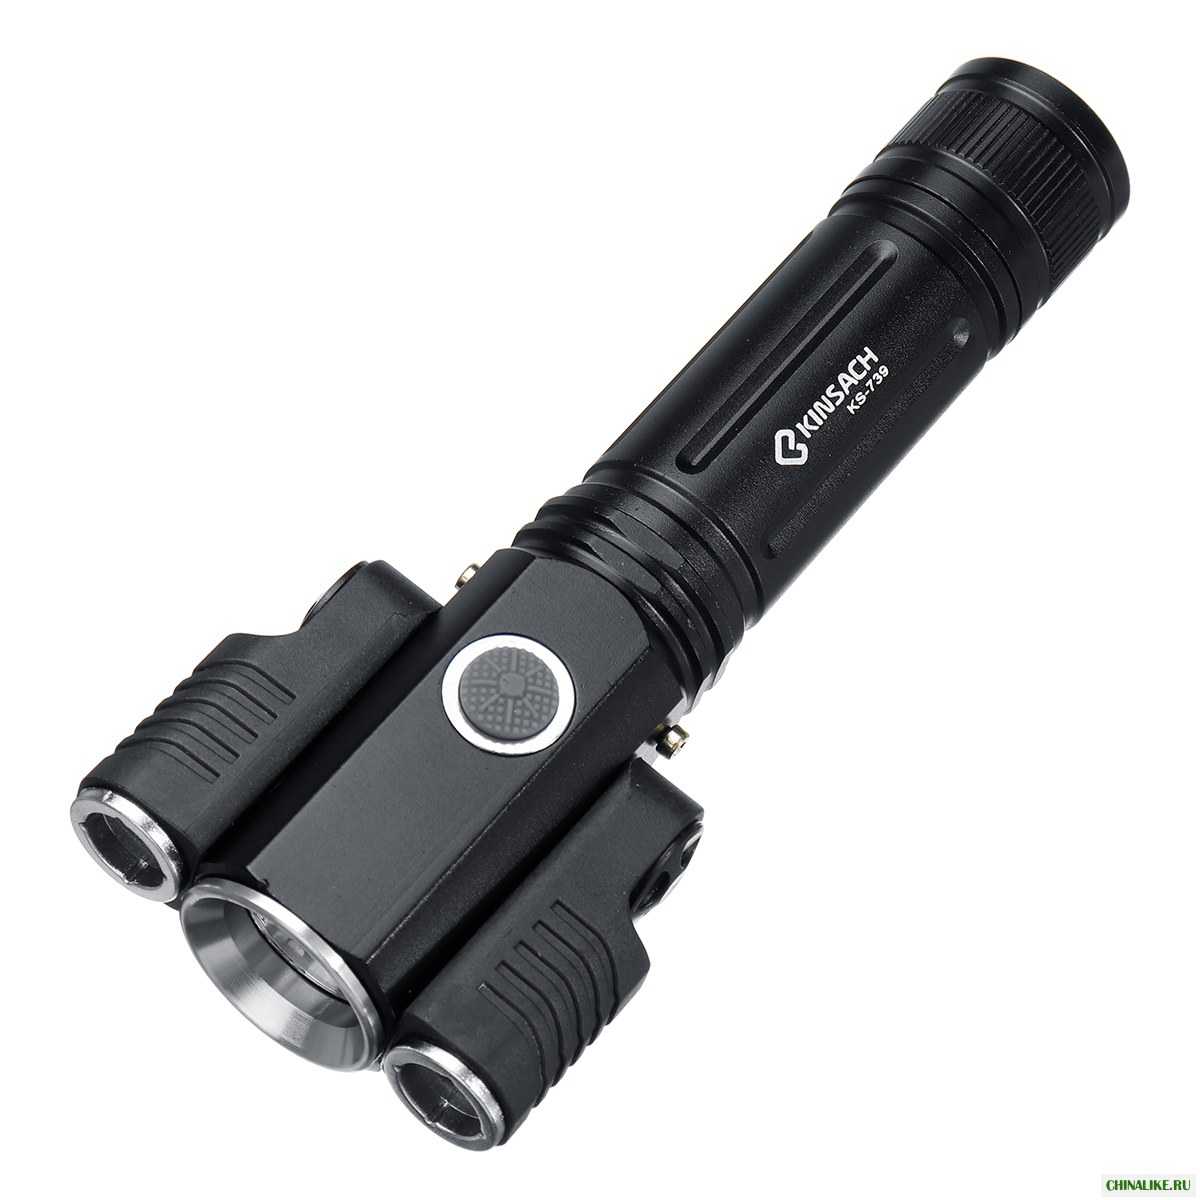 7 доработок мультиметра — фонарик, аккумулятор, крепеж на руку, подсветка, щупы, кнопка